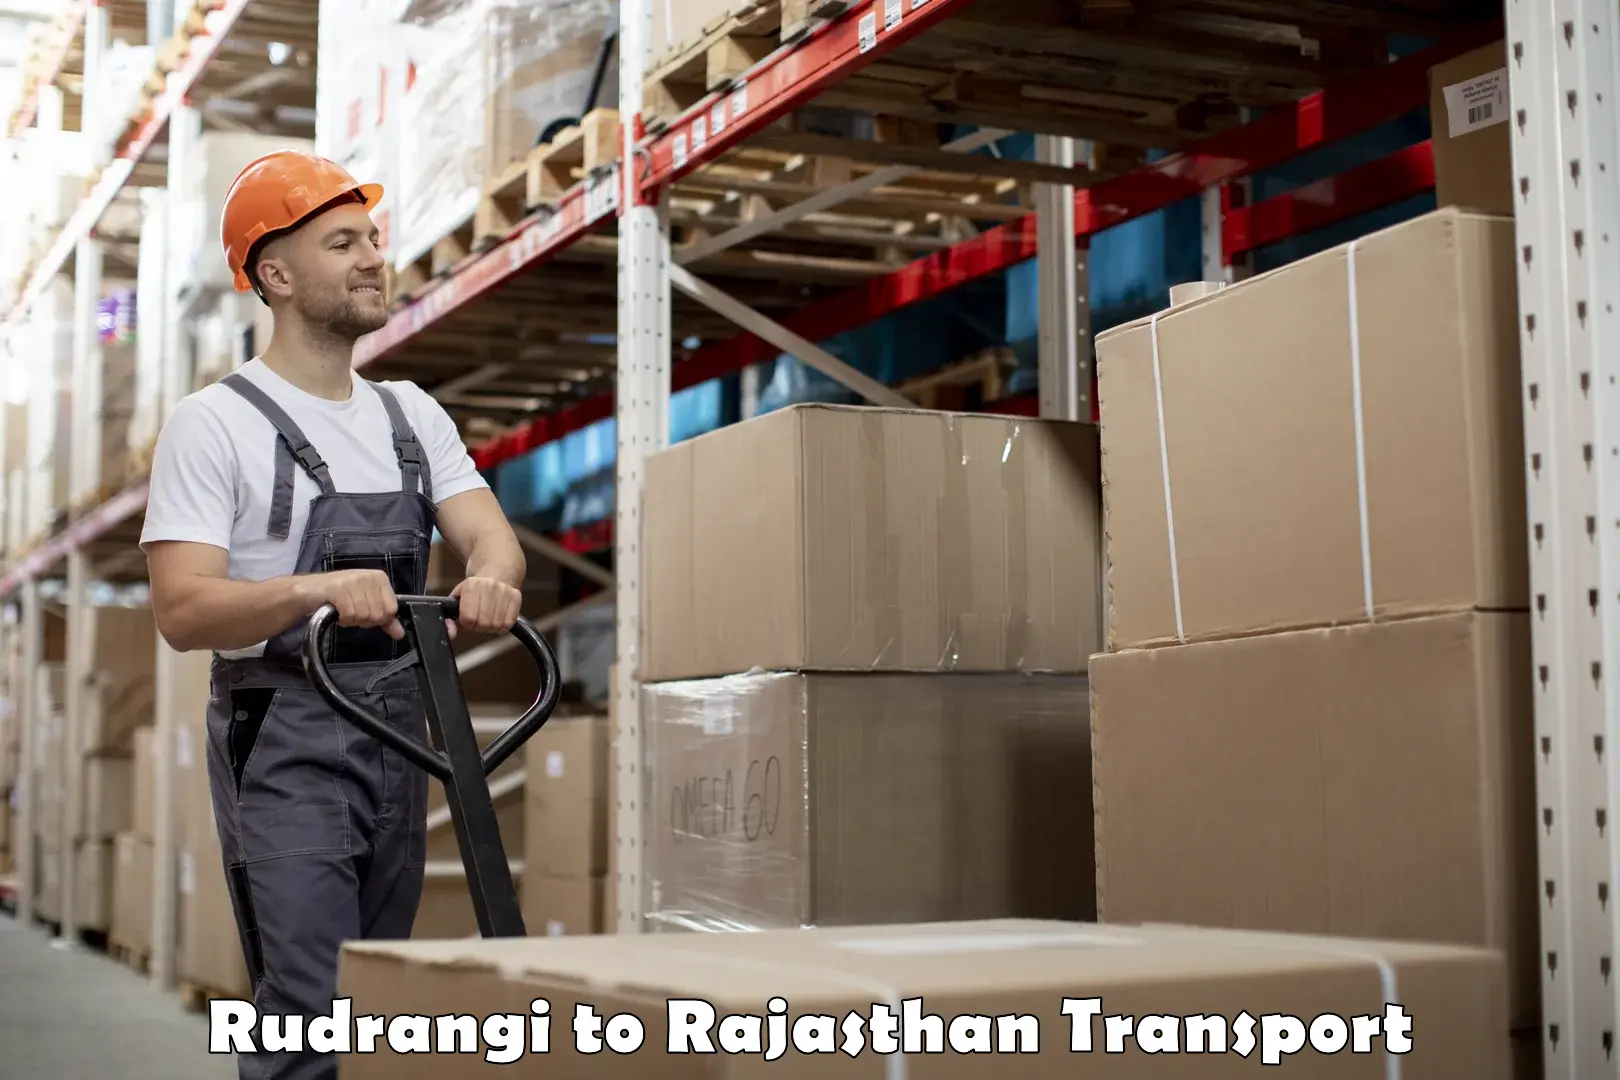 Road transport online services Rudrangi to Pratapgarh Rajasthan